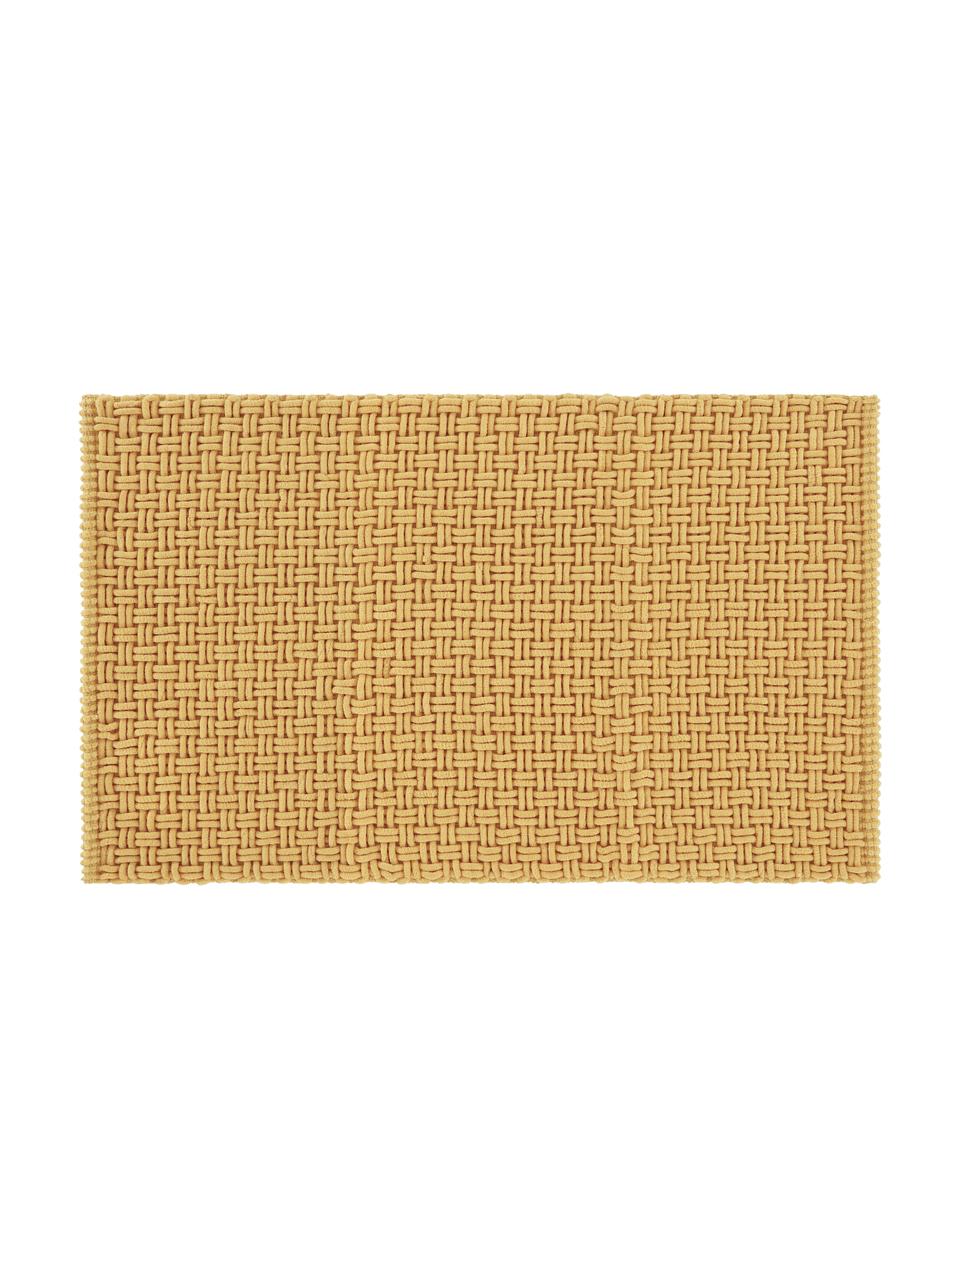 Miękki dywanik łazienkowy Panama, 60% poliester, 40% bawełna, Żółty, S 80 x D 120 cm